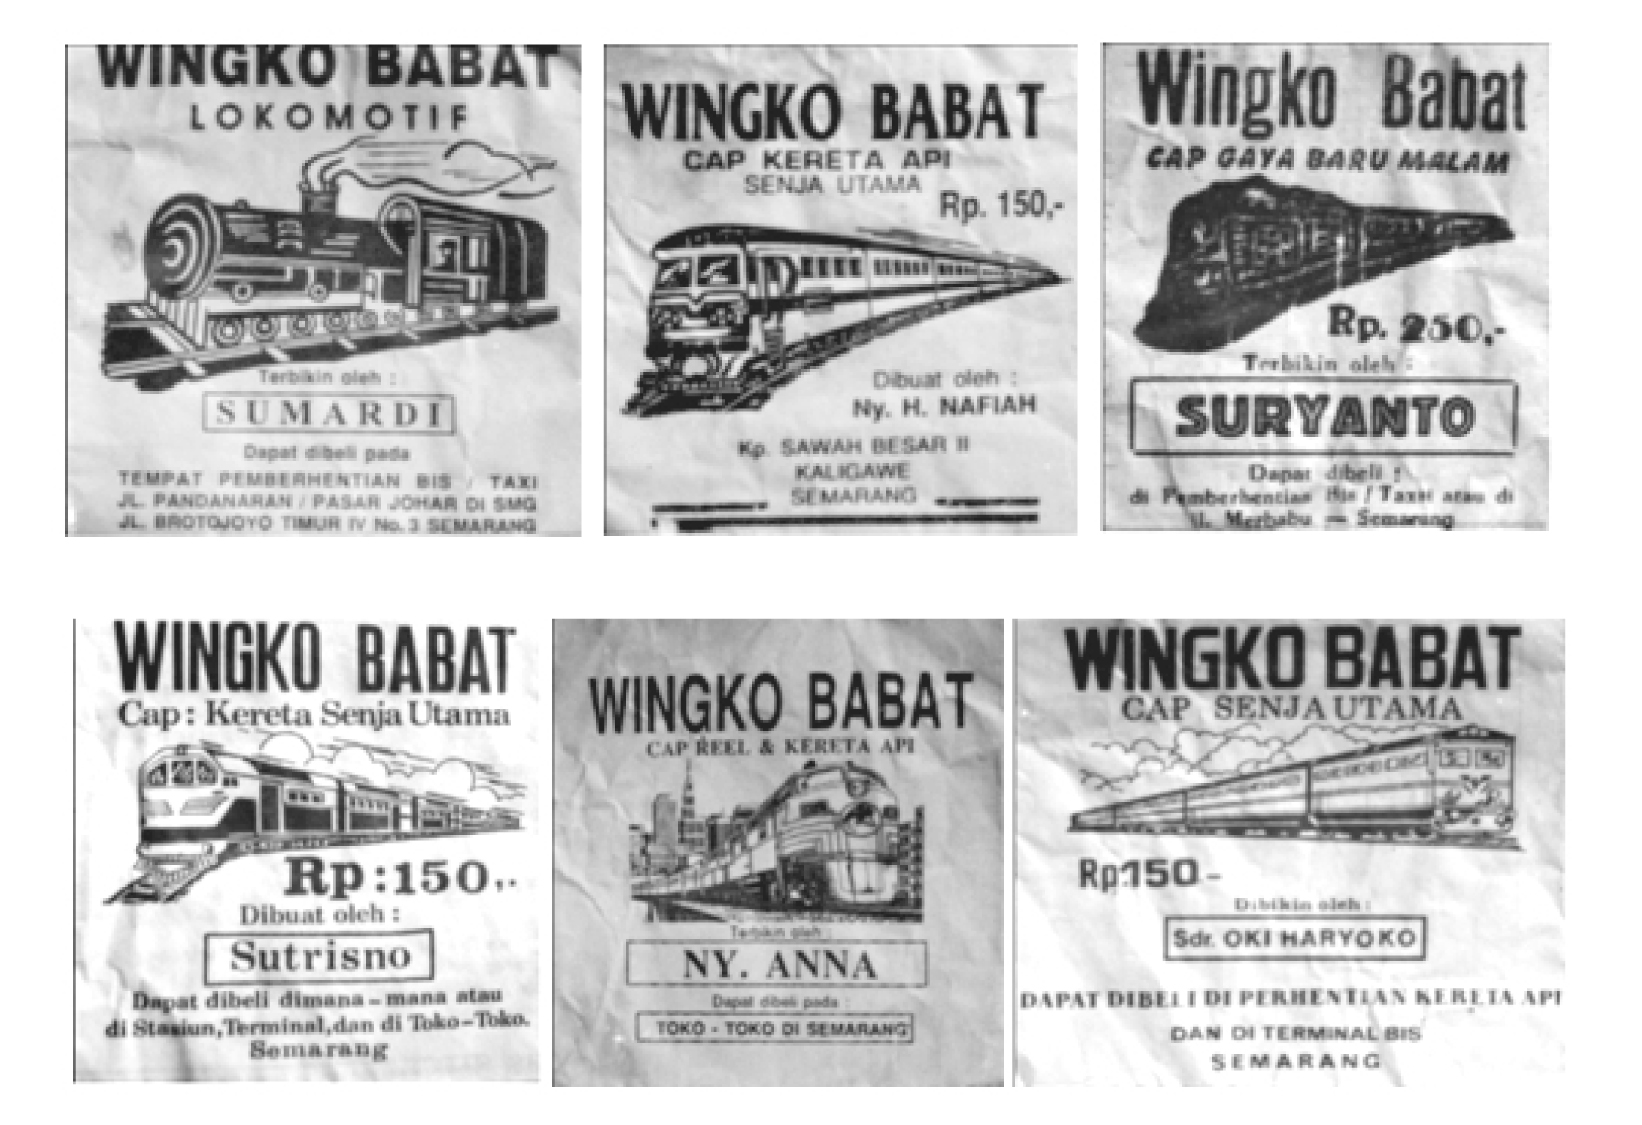 Merek-merek kemasan Wingko Babat bernuansa kereta api.  (Sumber: Afnita, 2010:102)